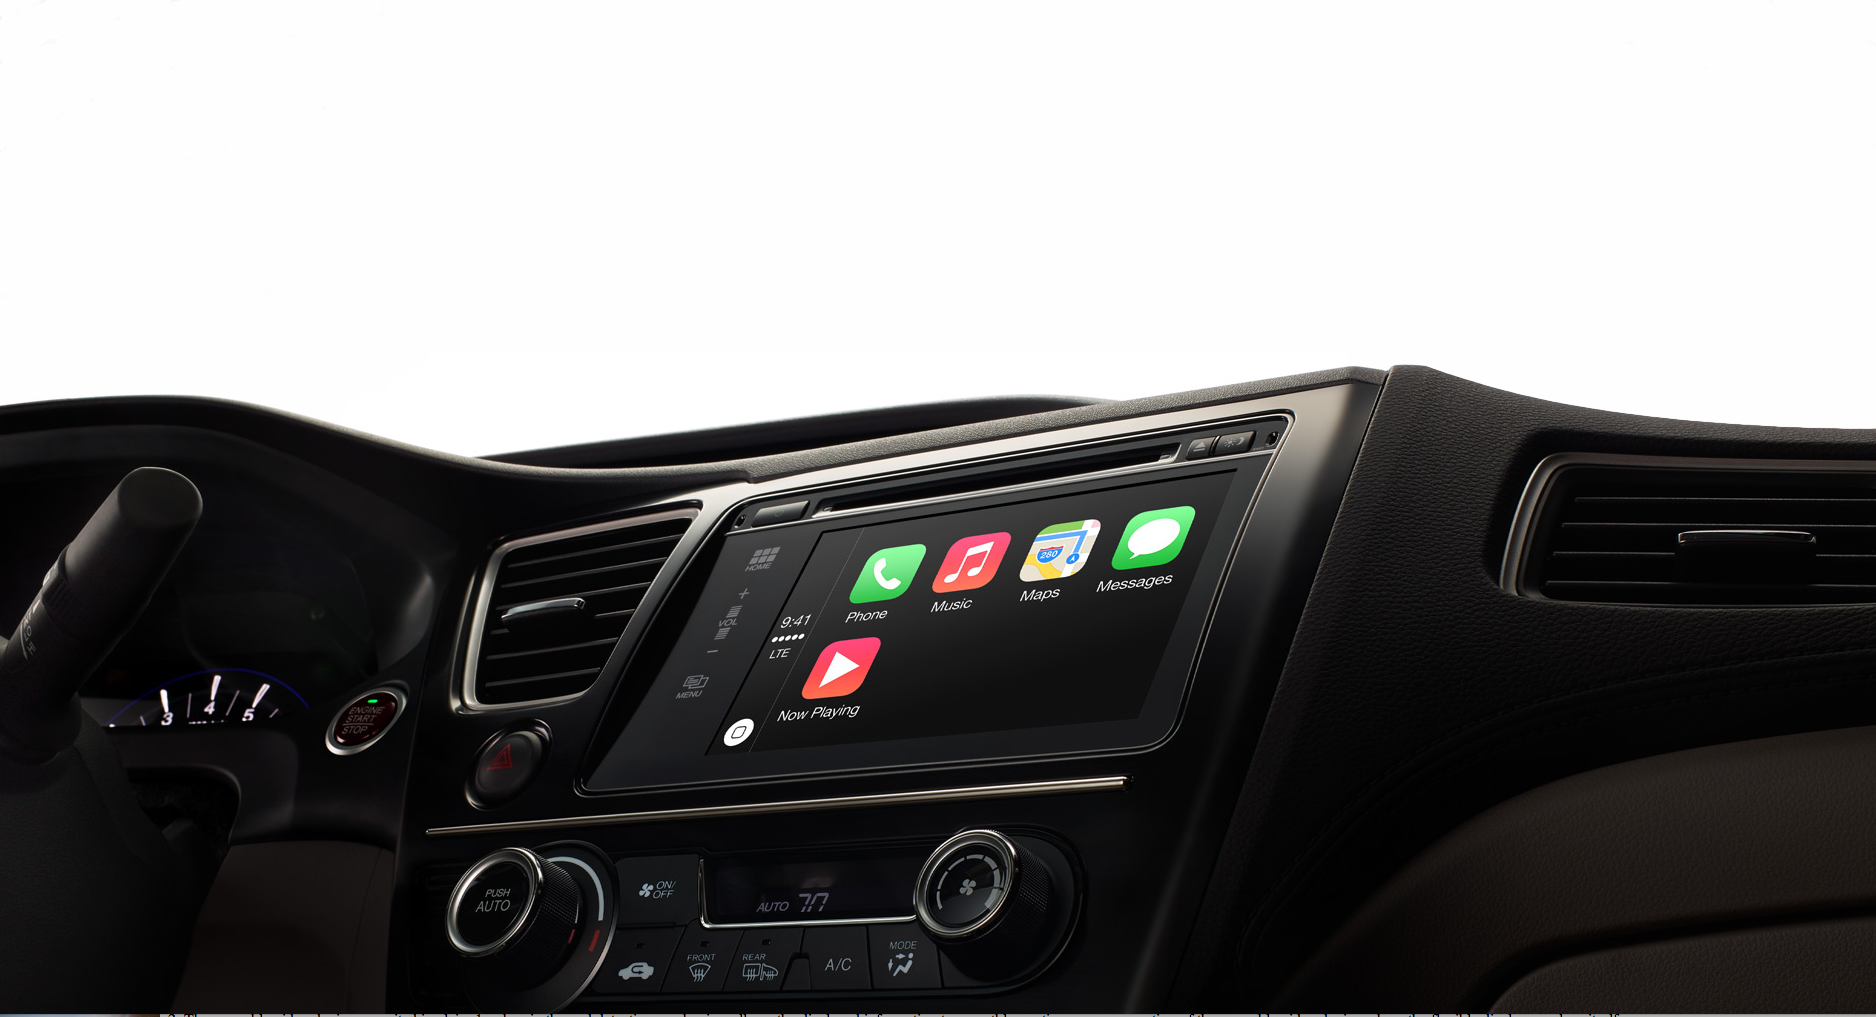 Nueve nuevos fabricantes de automóviles se registran en Apple CarPlay